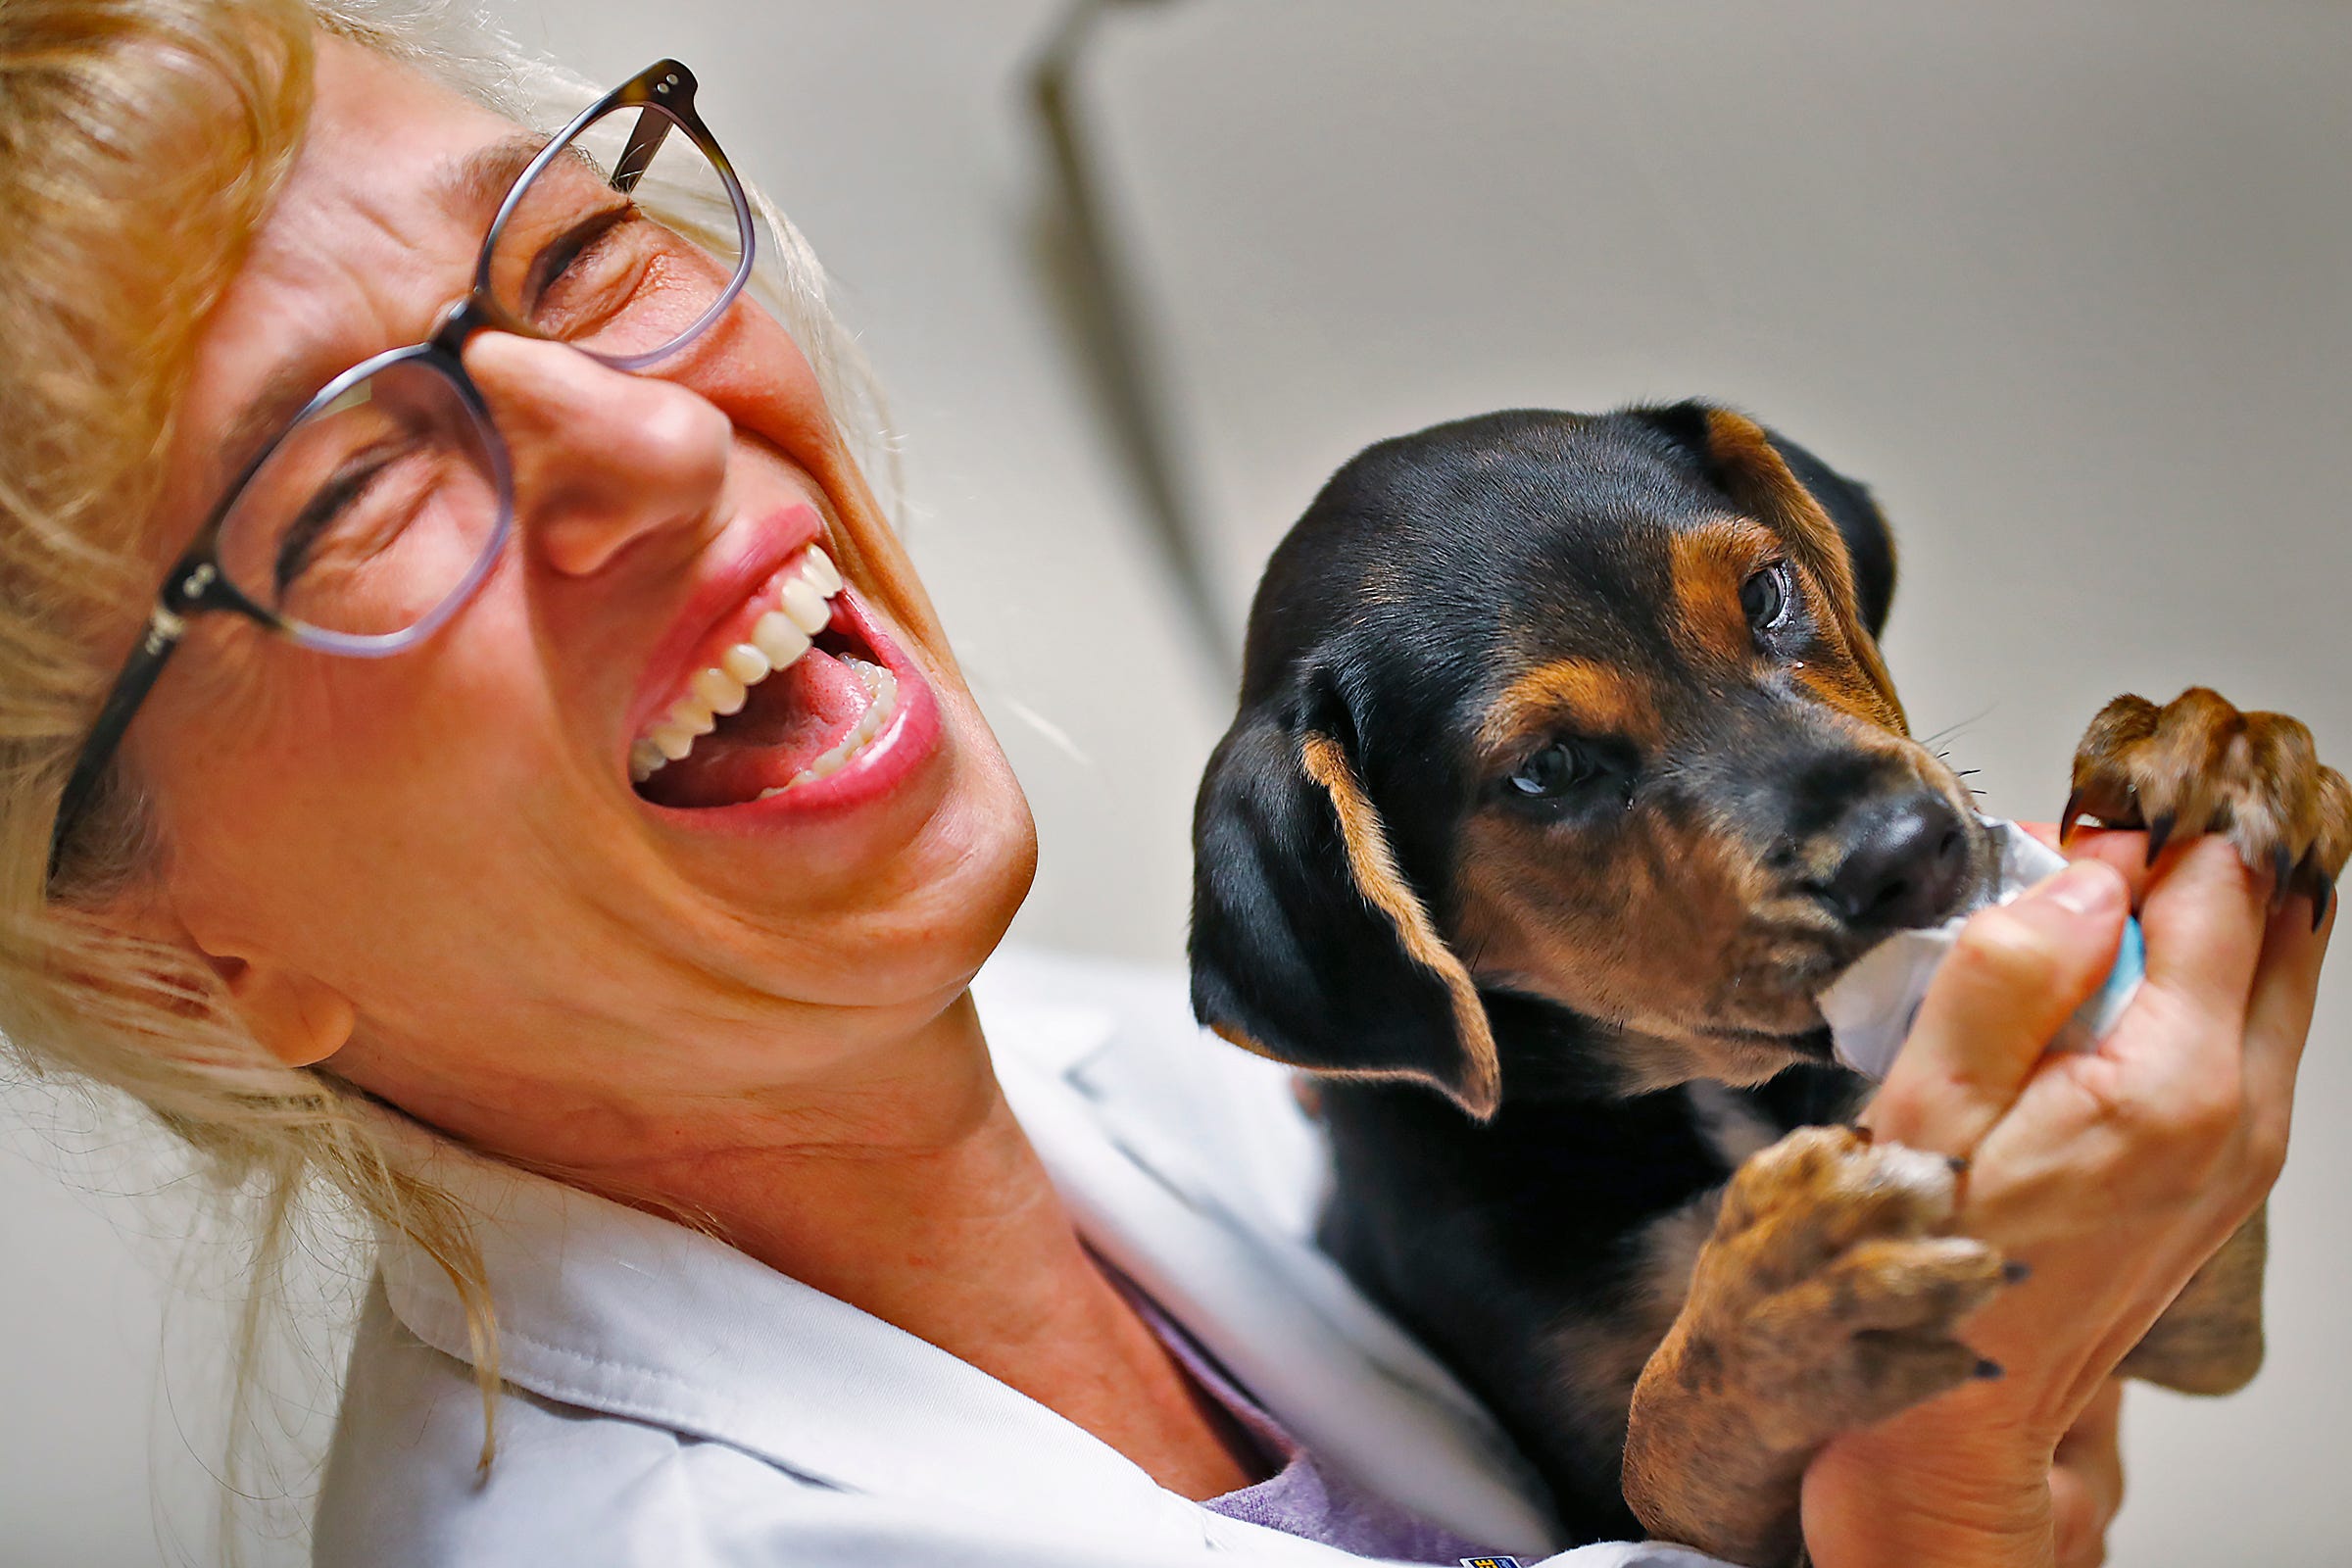 dr penny veterinarian